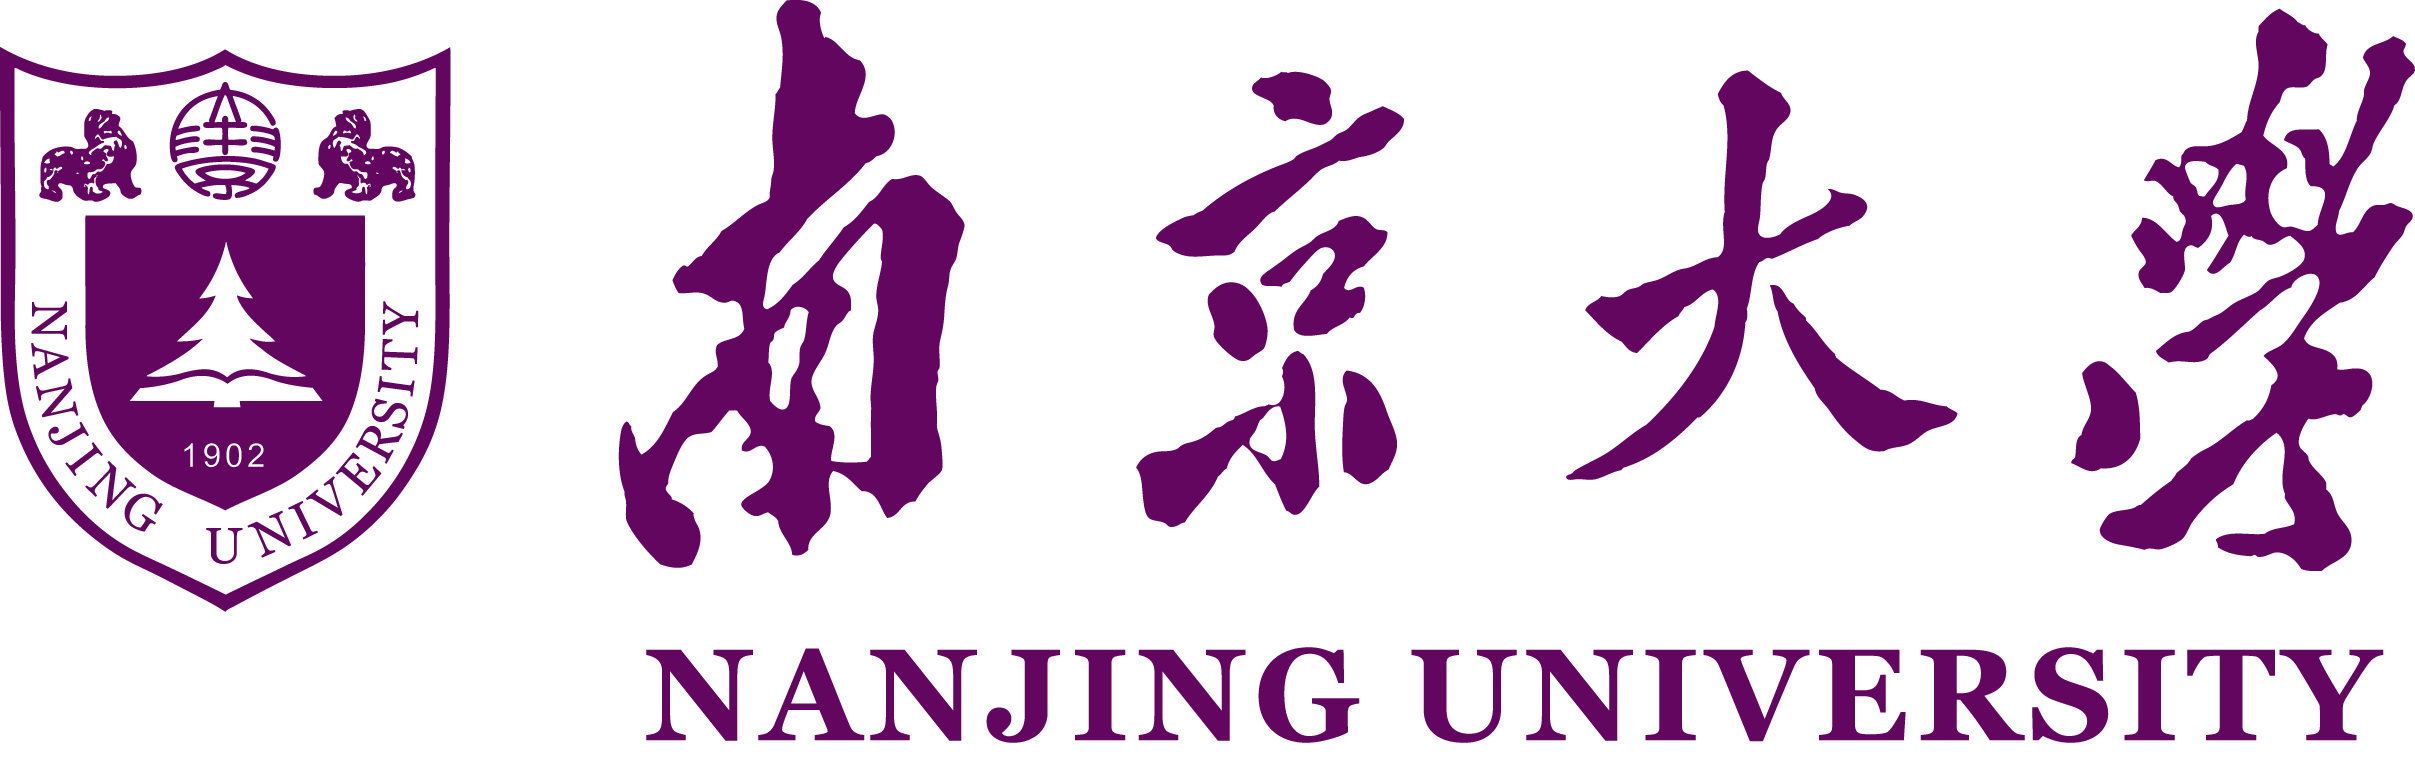 جامعة نانجينغ | الدراسة في الخارج